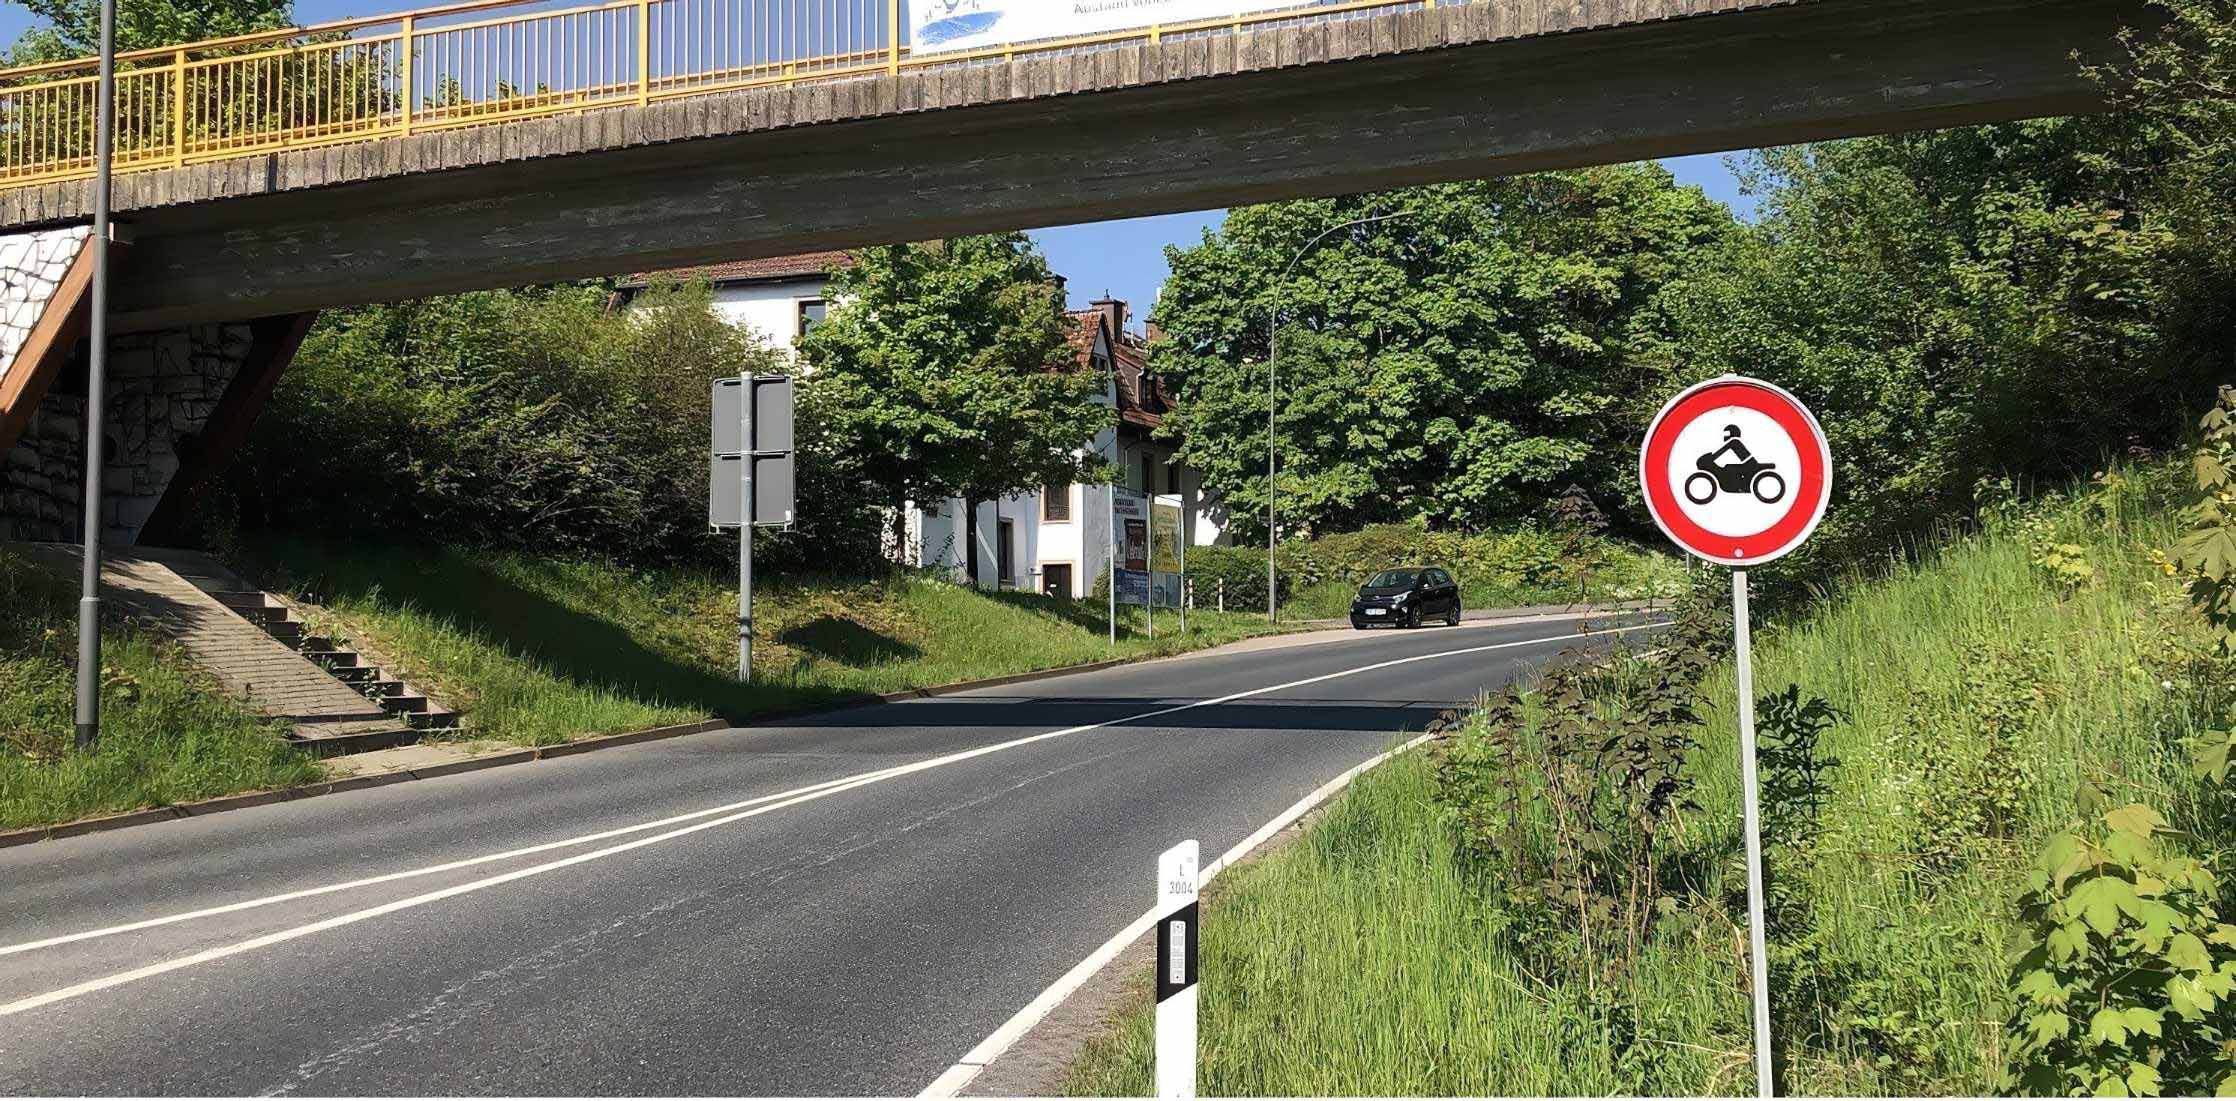 Strecke am Feldberg jetzt dauerhaft gesperrt? - MOTORCYCLES.NEWS